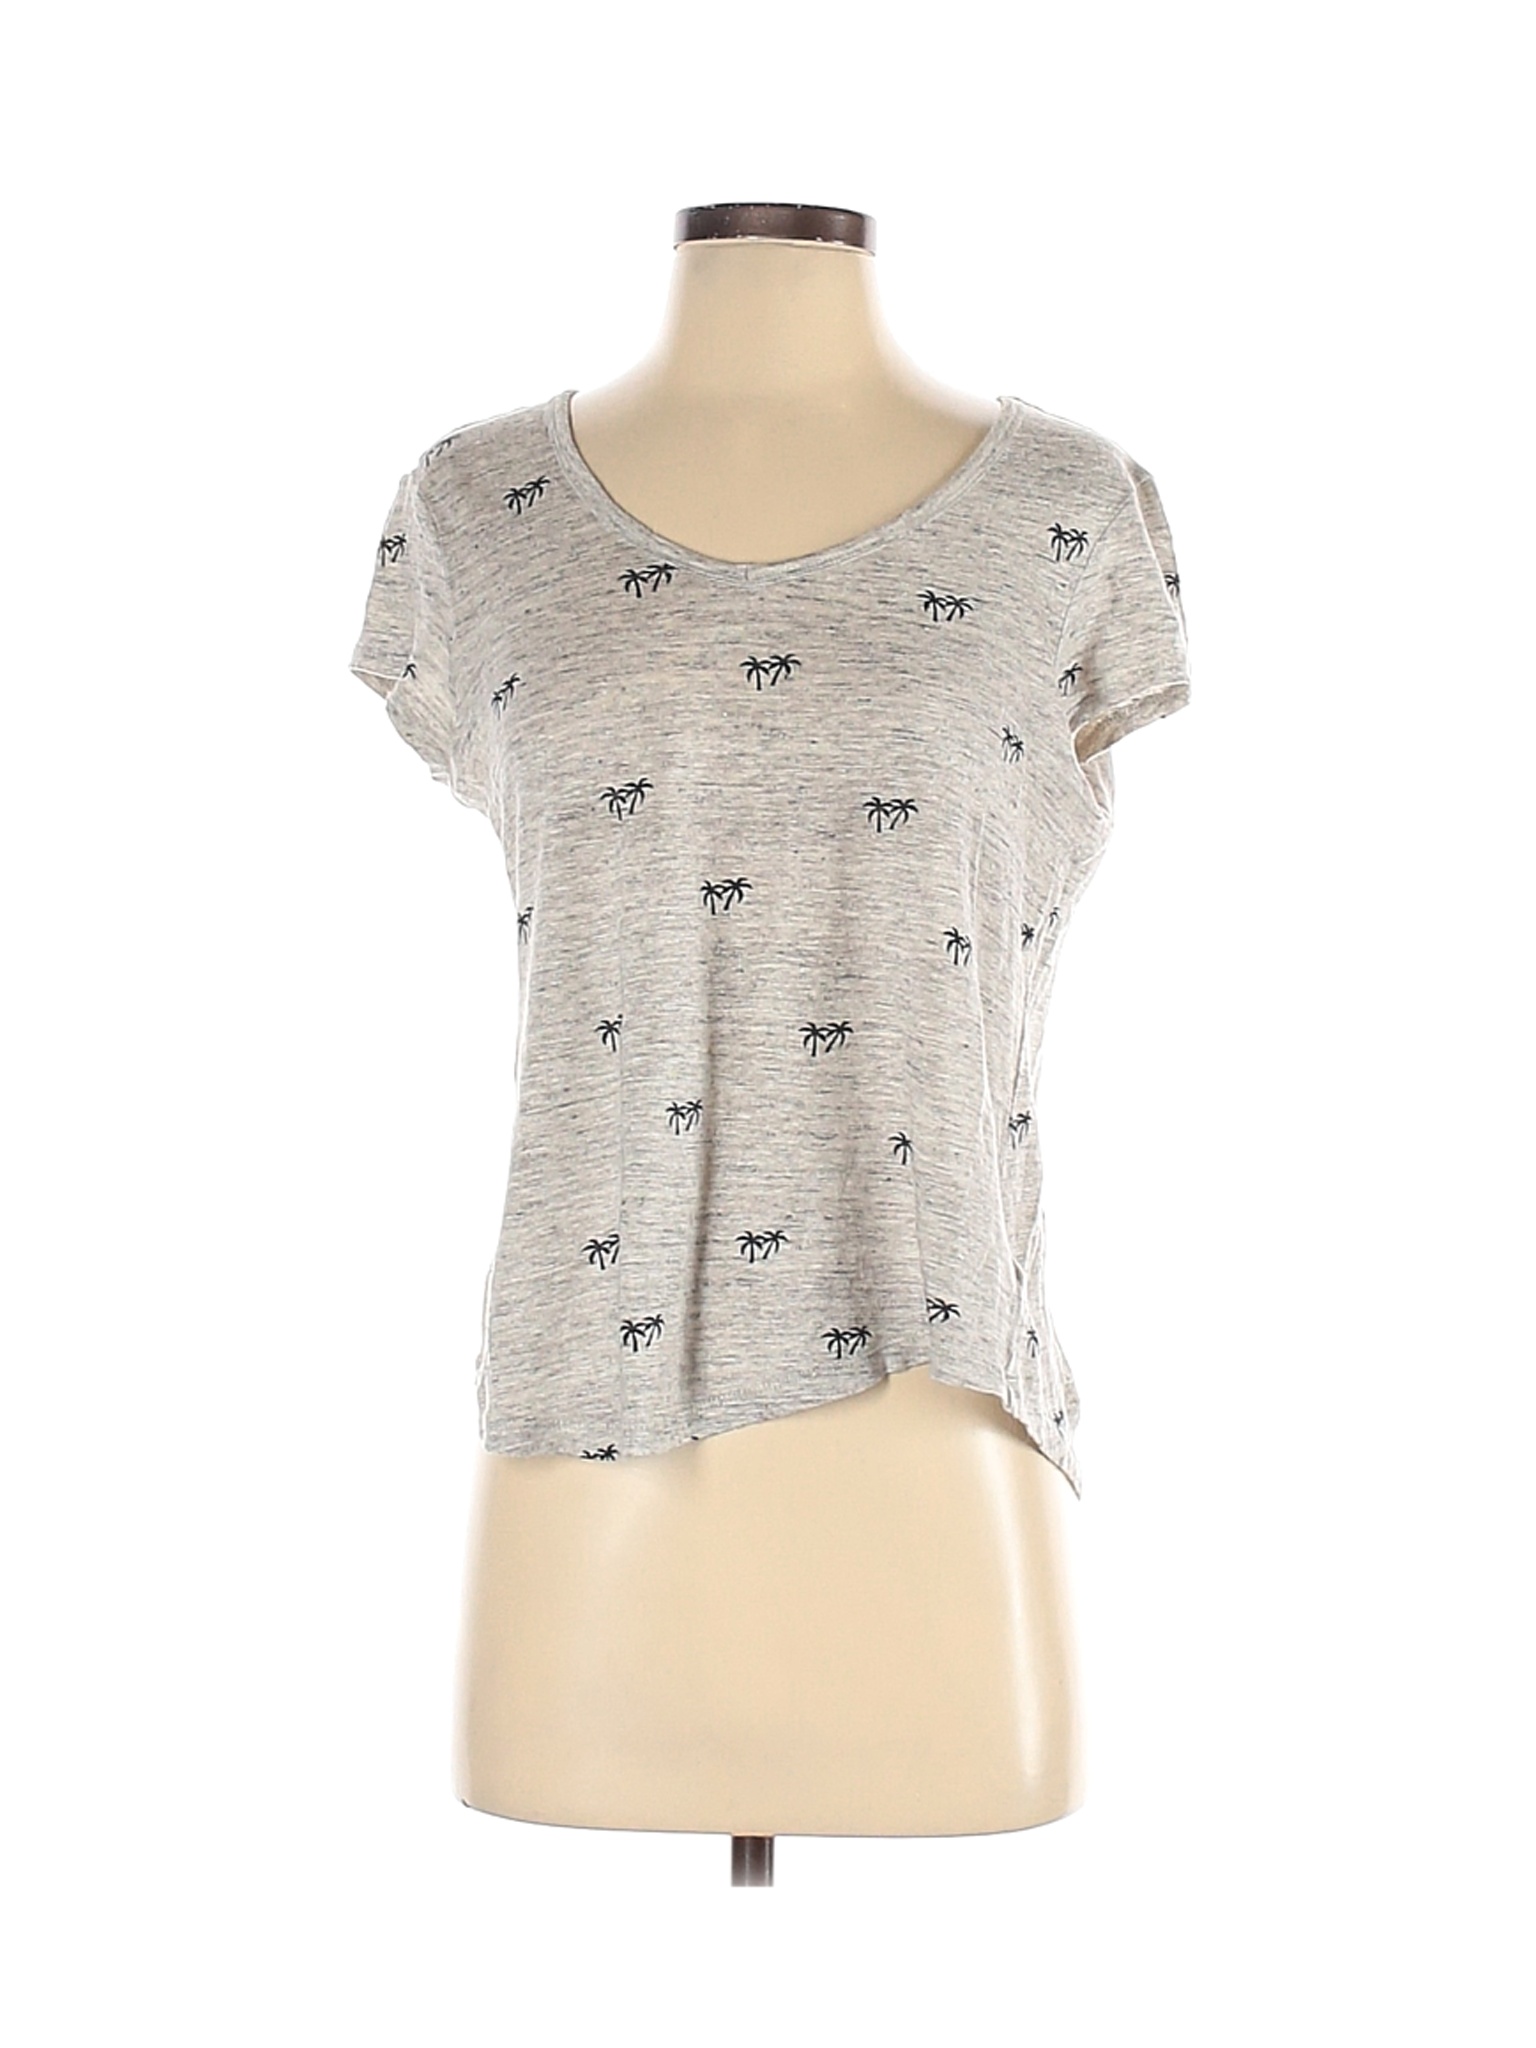 NWT Artisan NY Women Gray Short Sleeve T-Shirt S | eBay